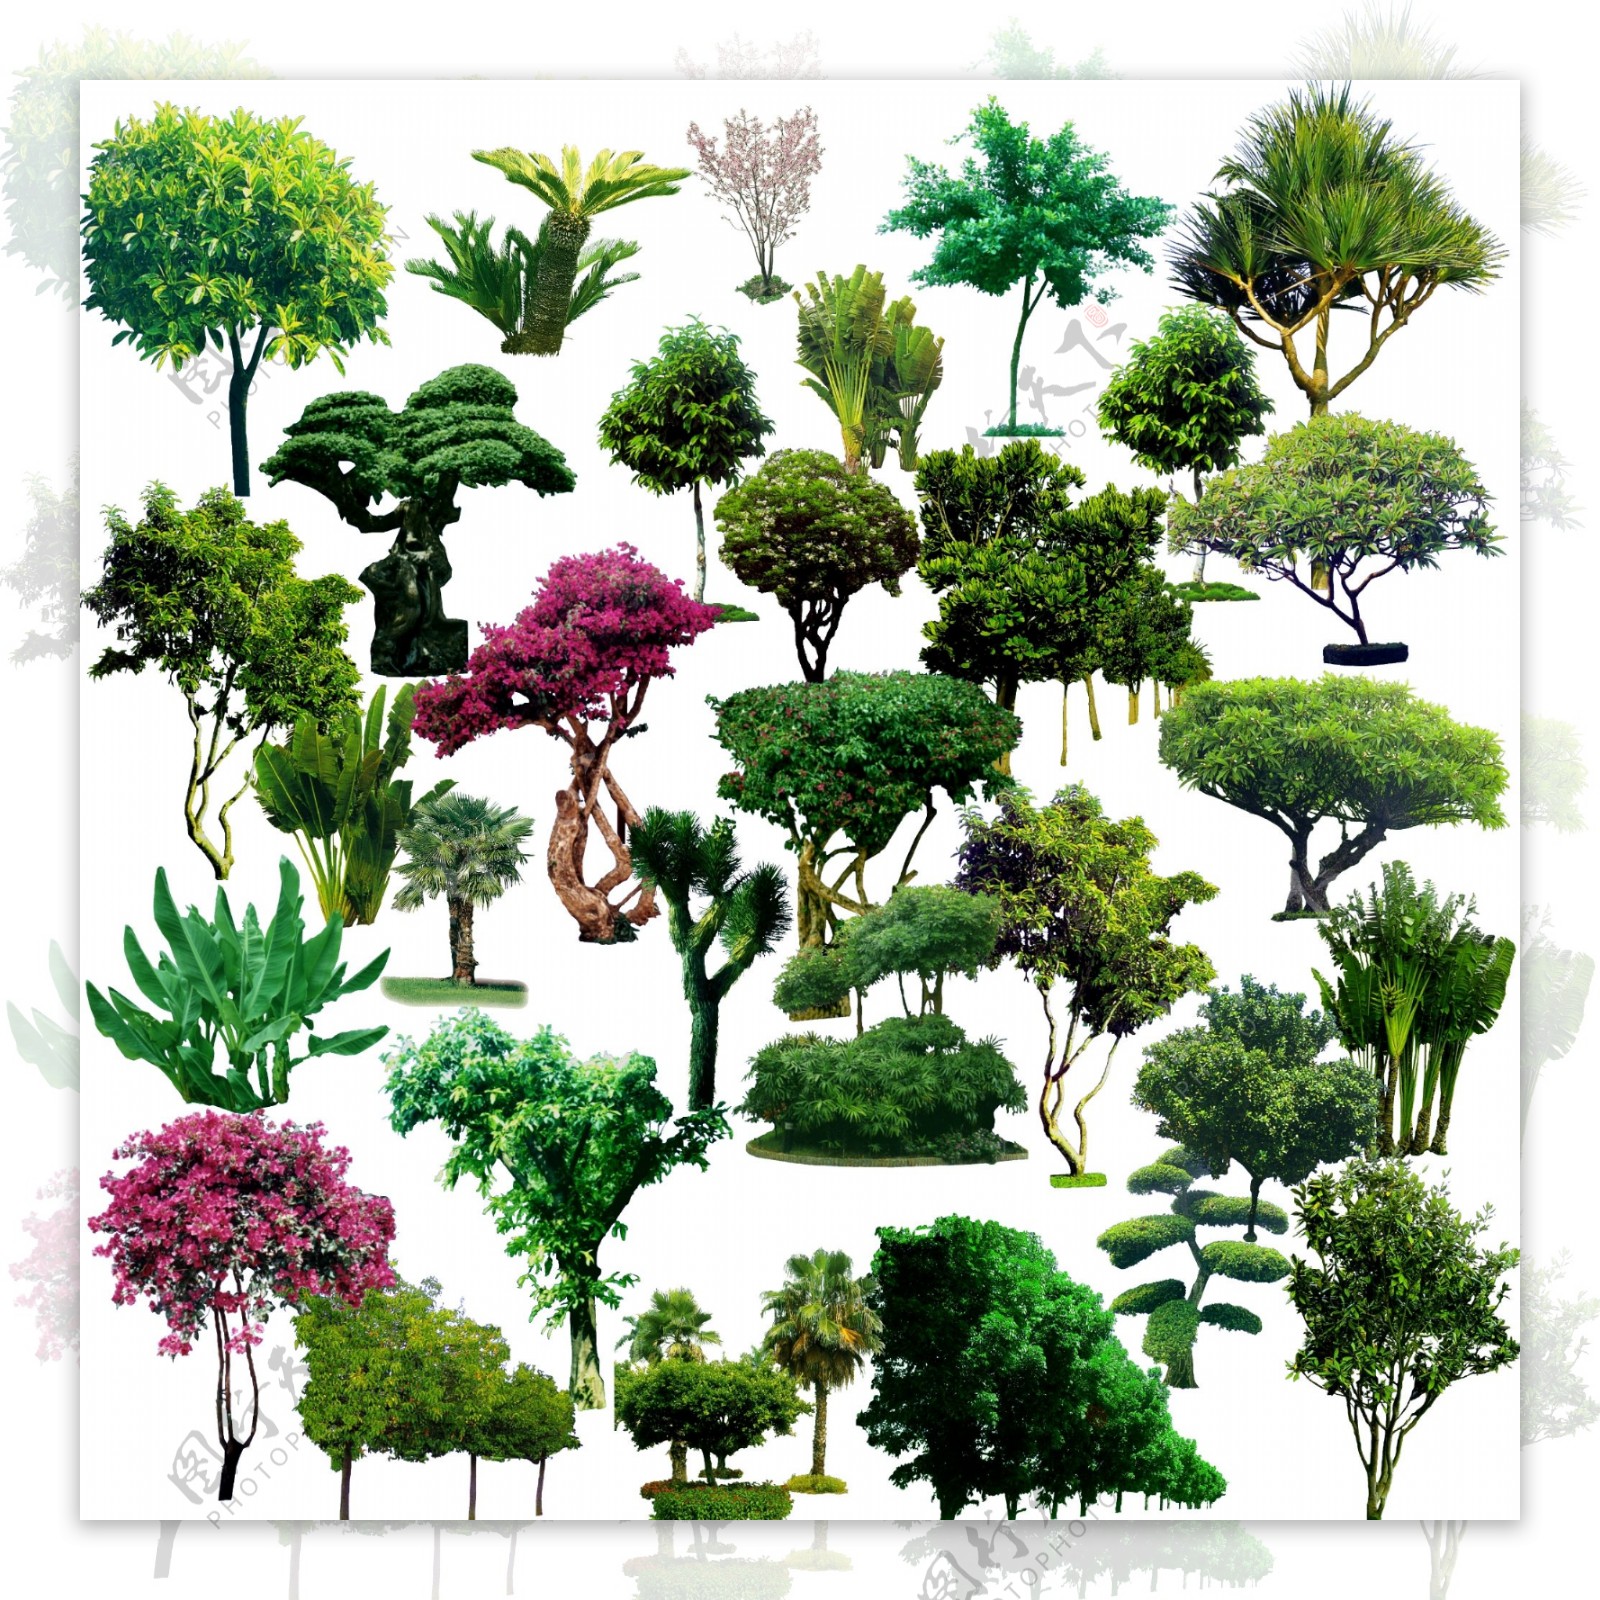 树木素材图片